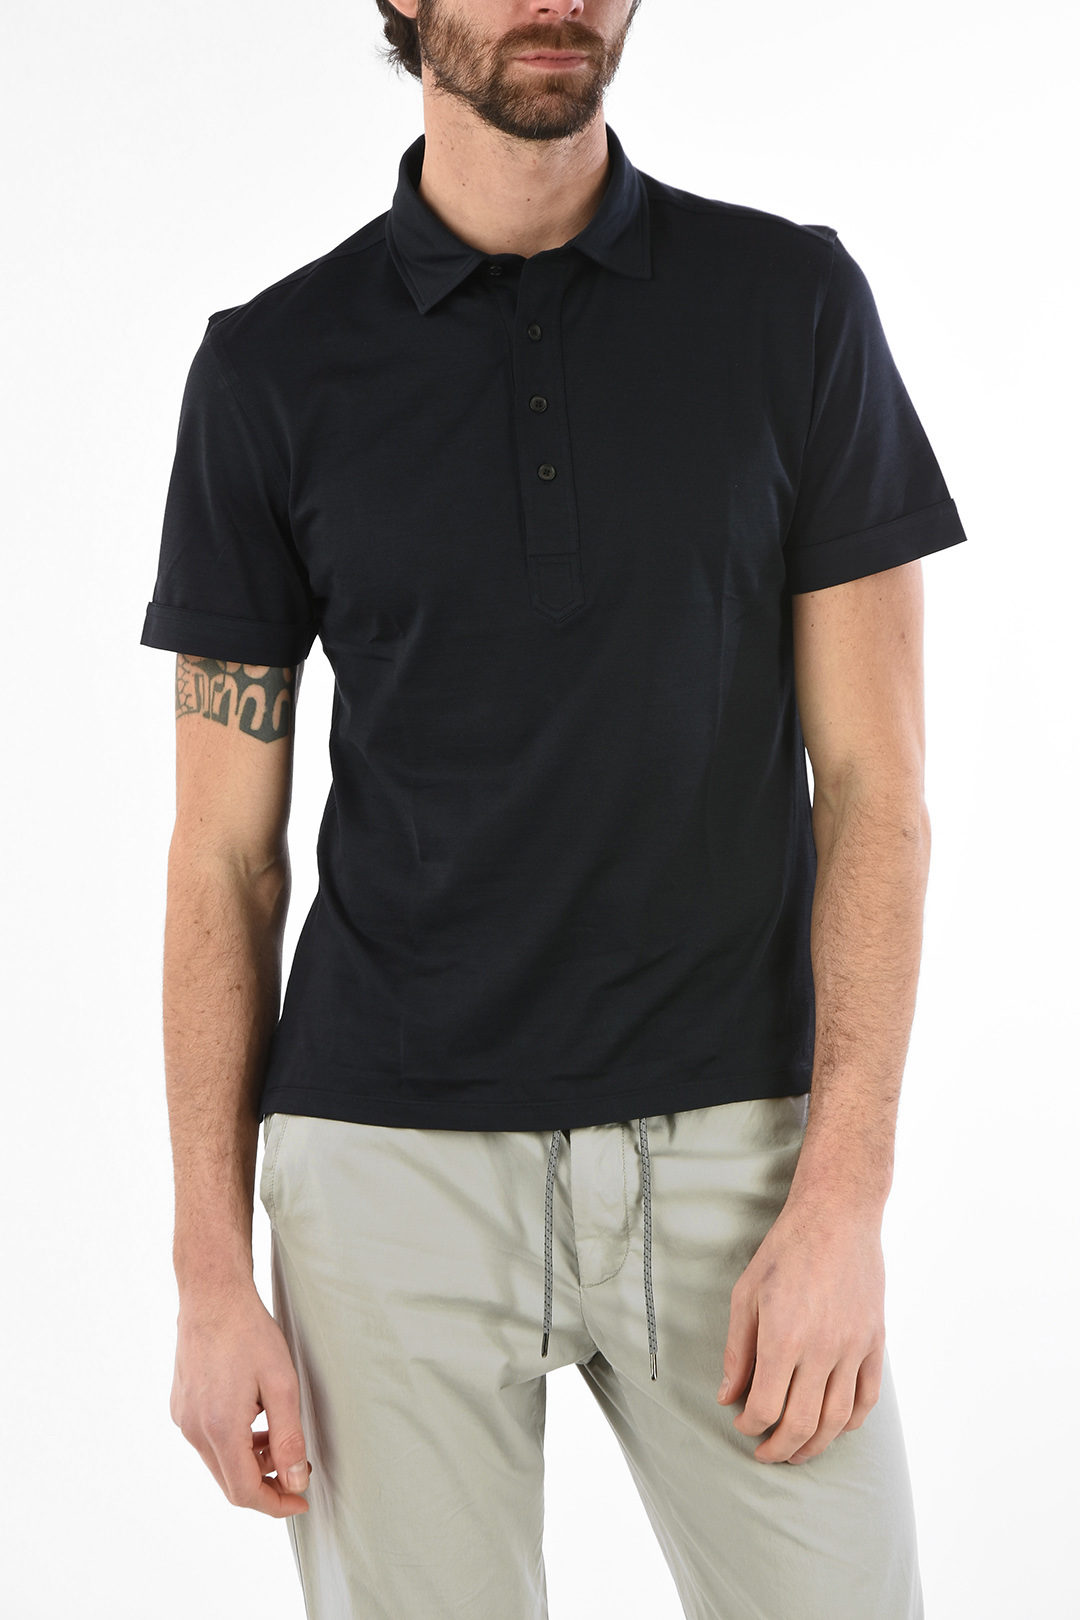 Ermenegildo Zegna Silk and Cotton 4 Button Polo Shirt men - Glamood Outlet